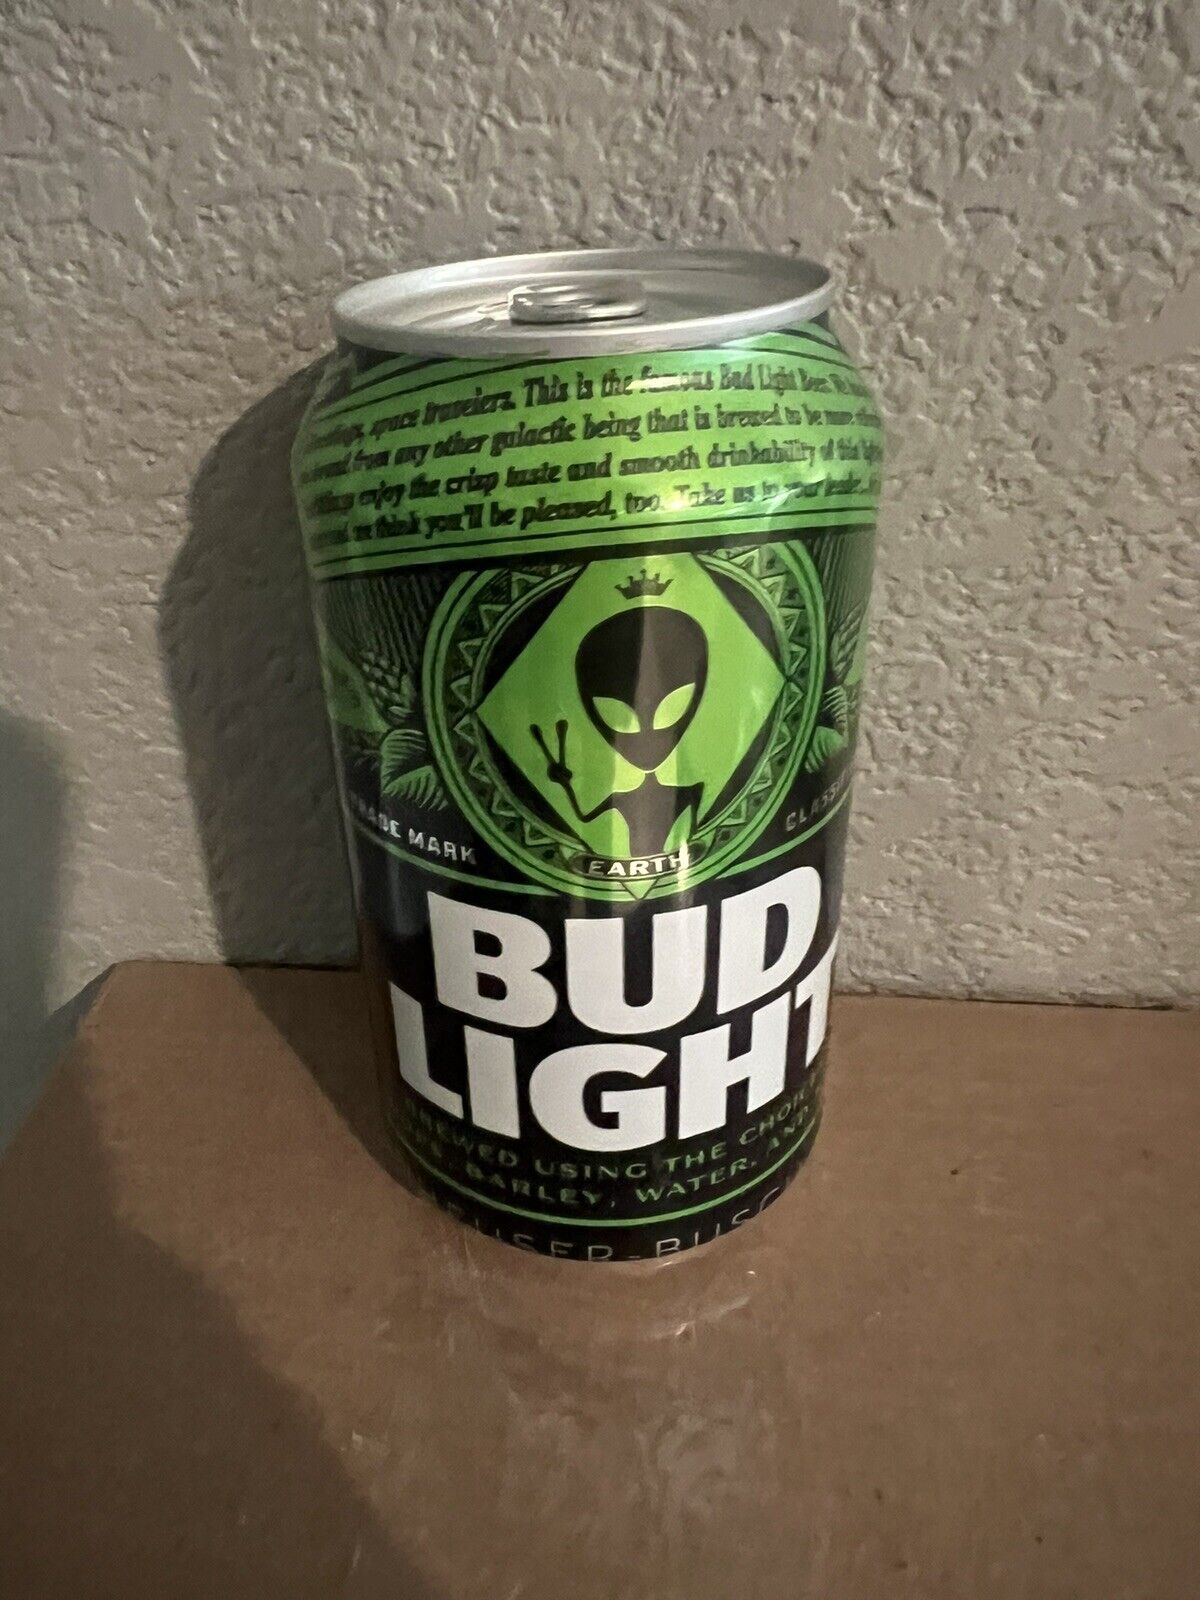 Bud Light Green Alien Beer Can 12oz. Anheuser-Busch, St. Louis, MO 